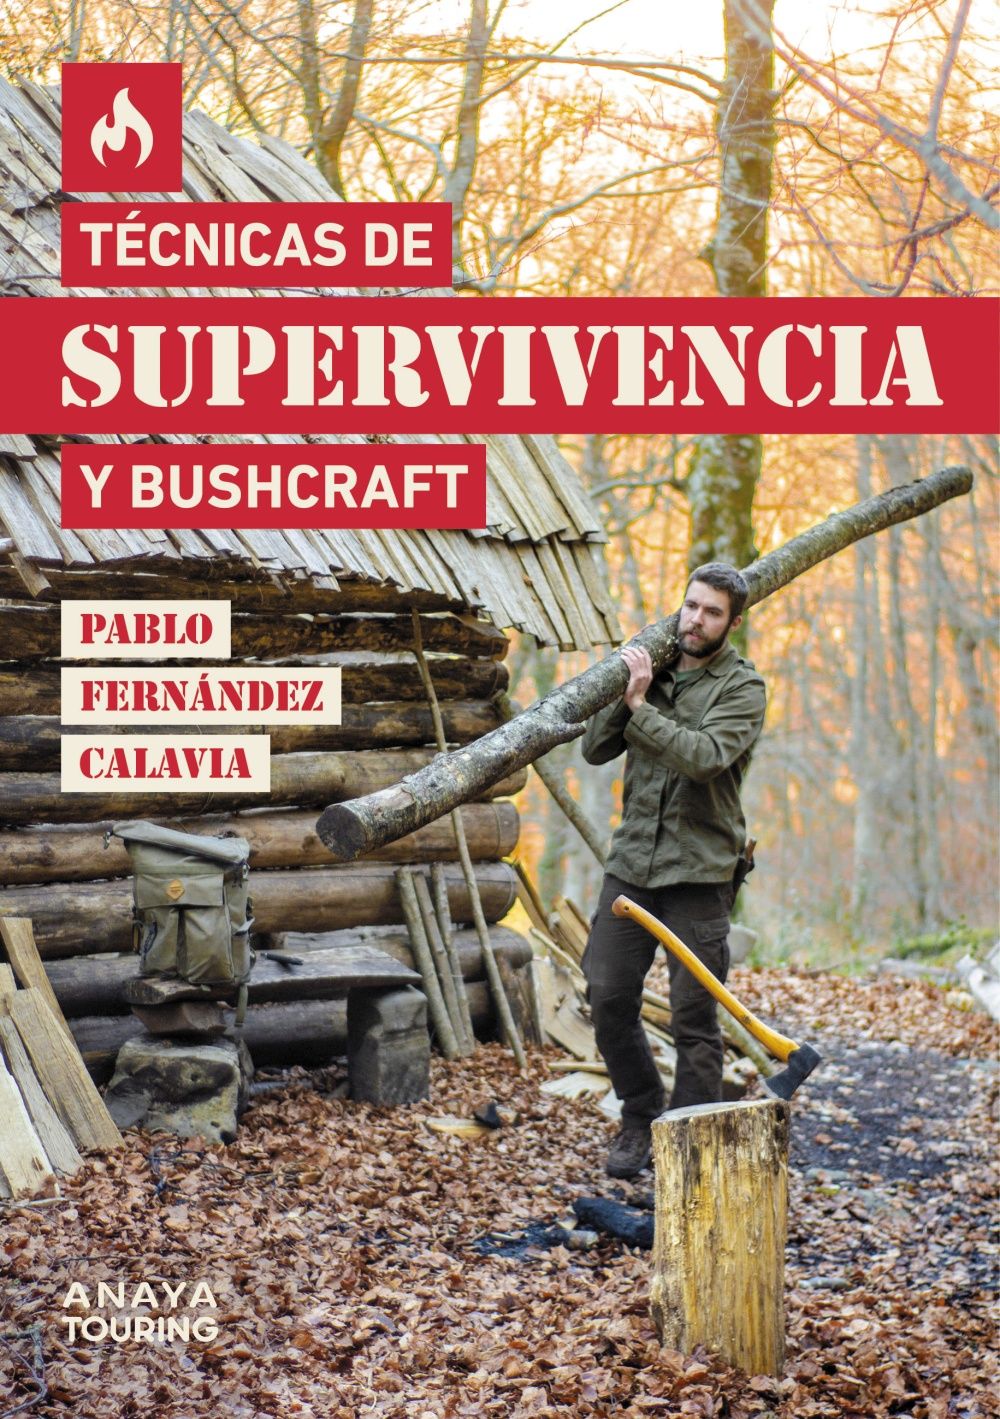 TECNICAS-DE-SUPERVIVENCIA-Y-BUSHCRAFT.jpg